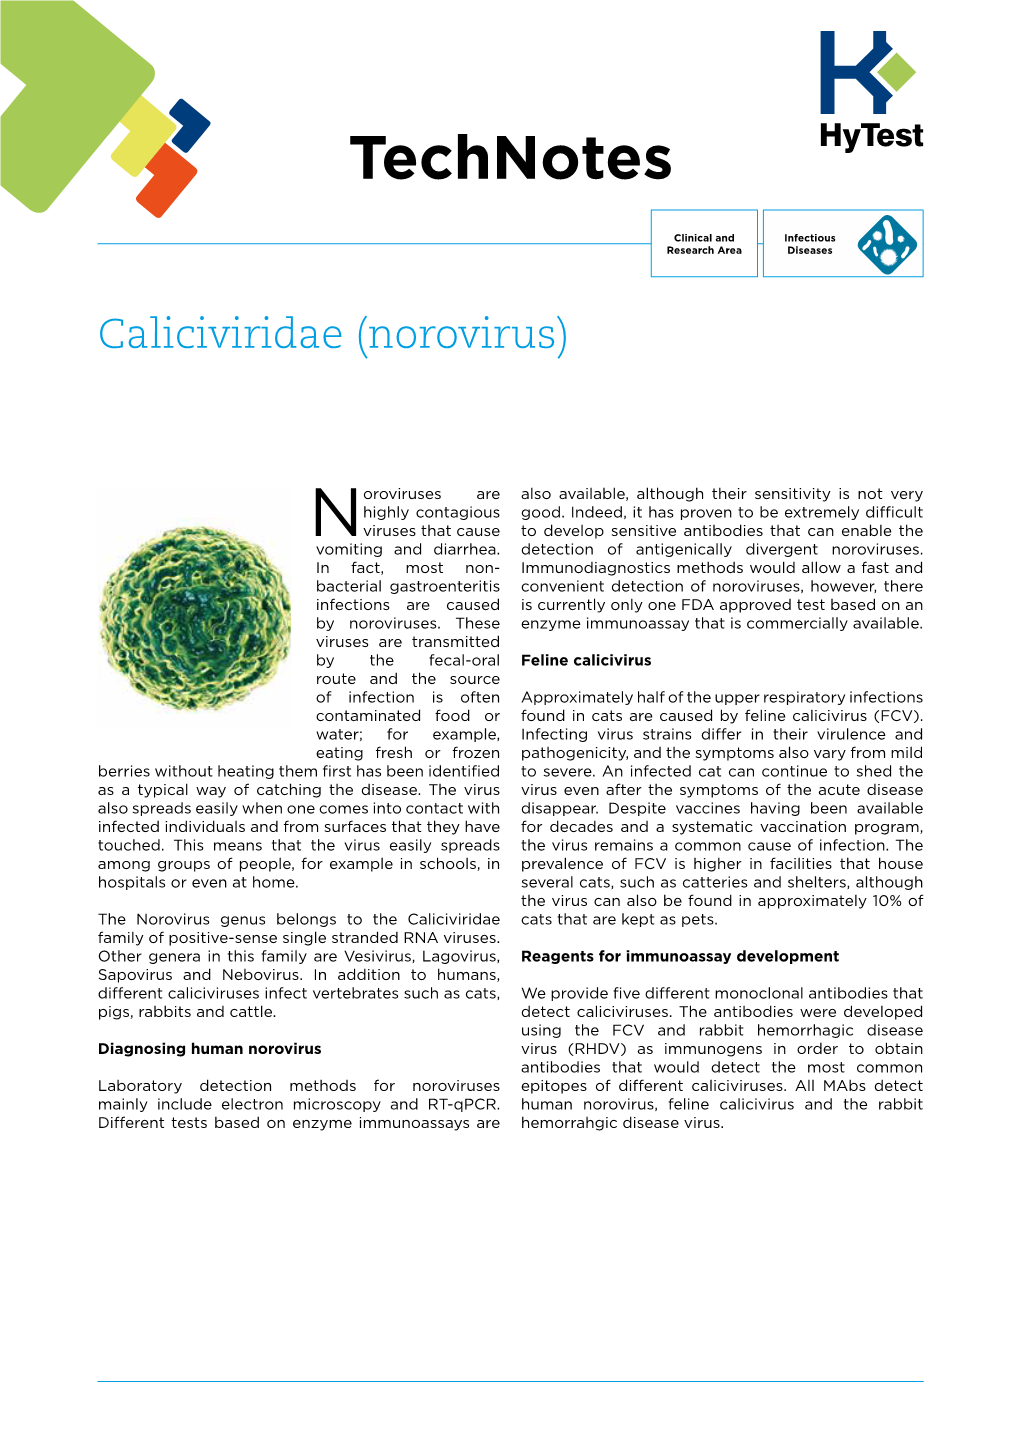 Caliciviridae (Norovirus)